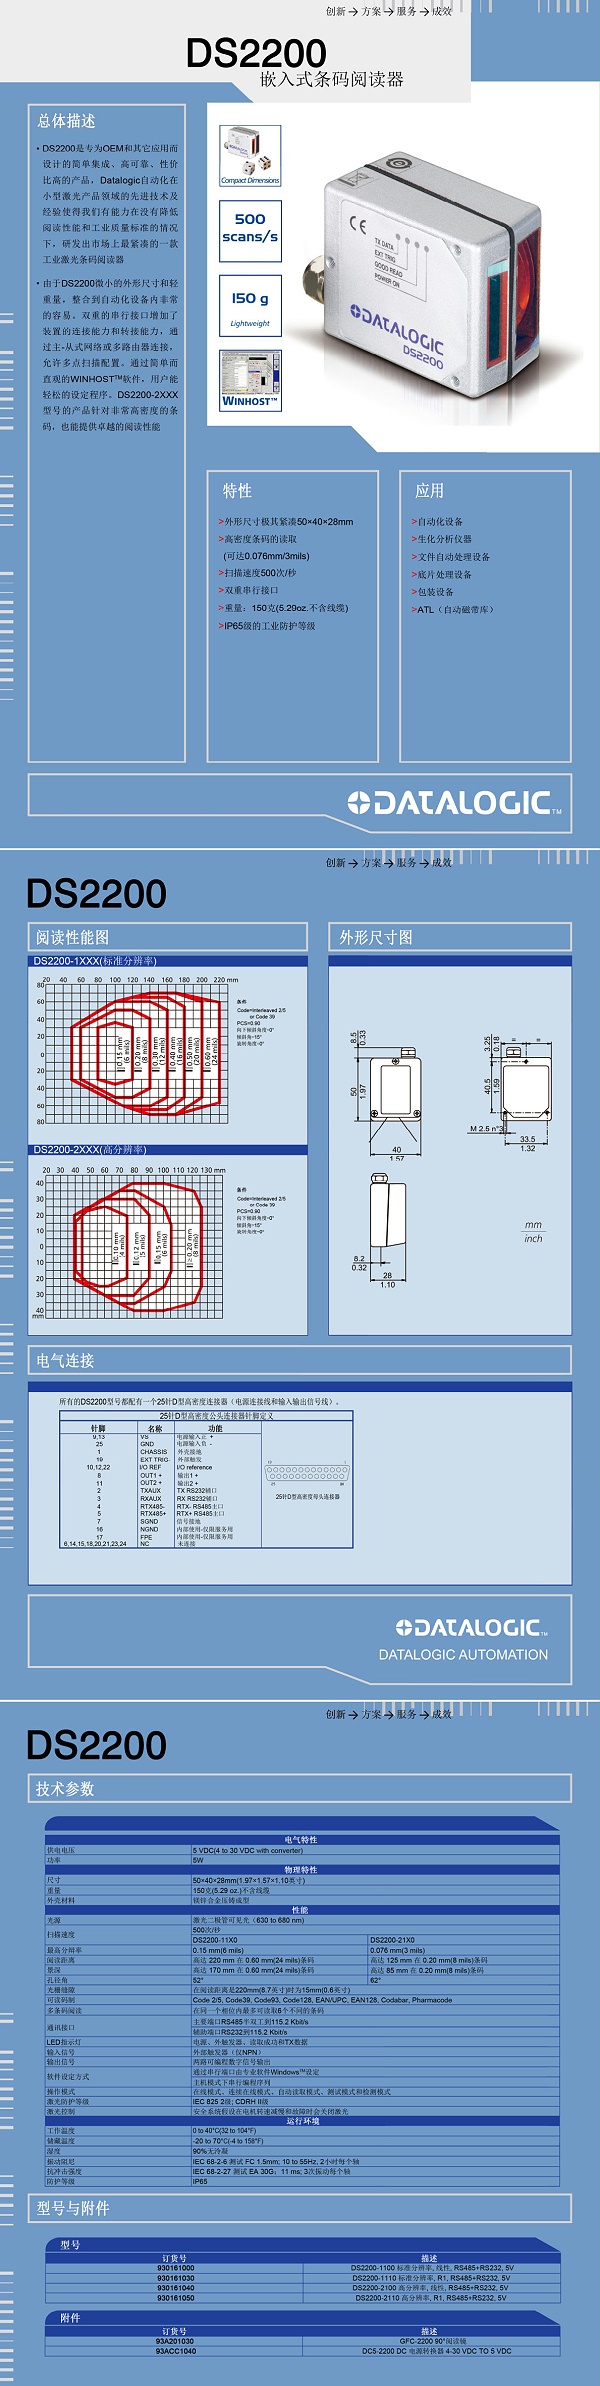 DS2200嵌入式条码阅读器产品